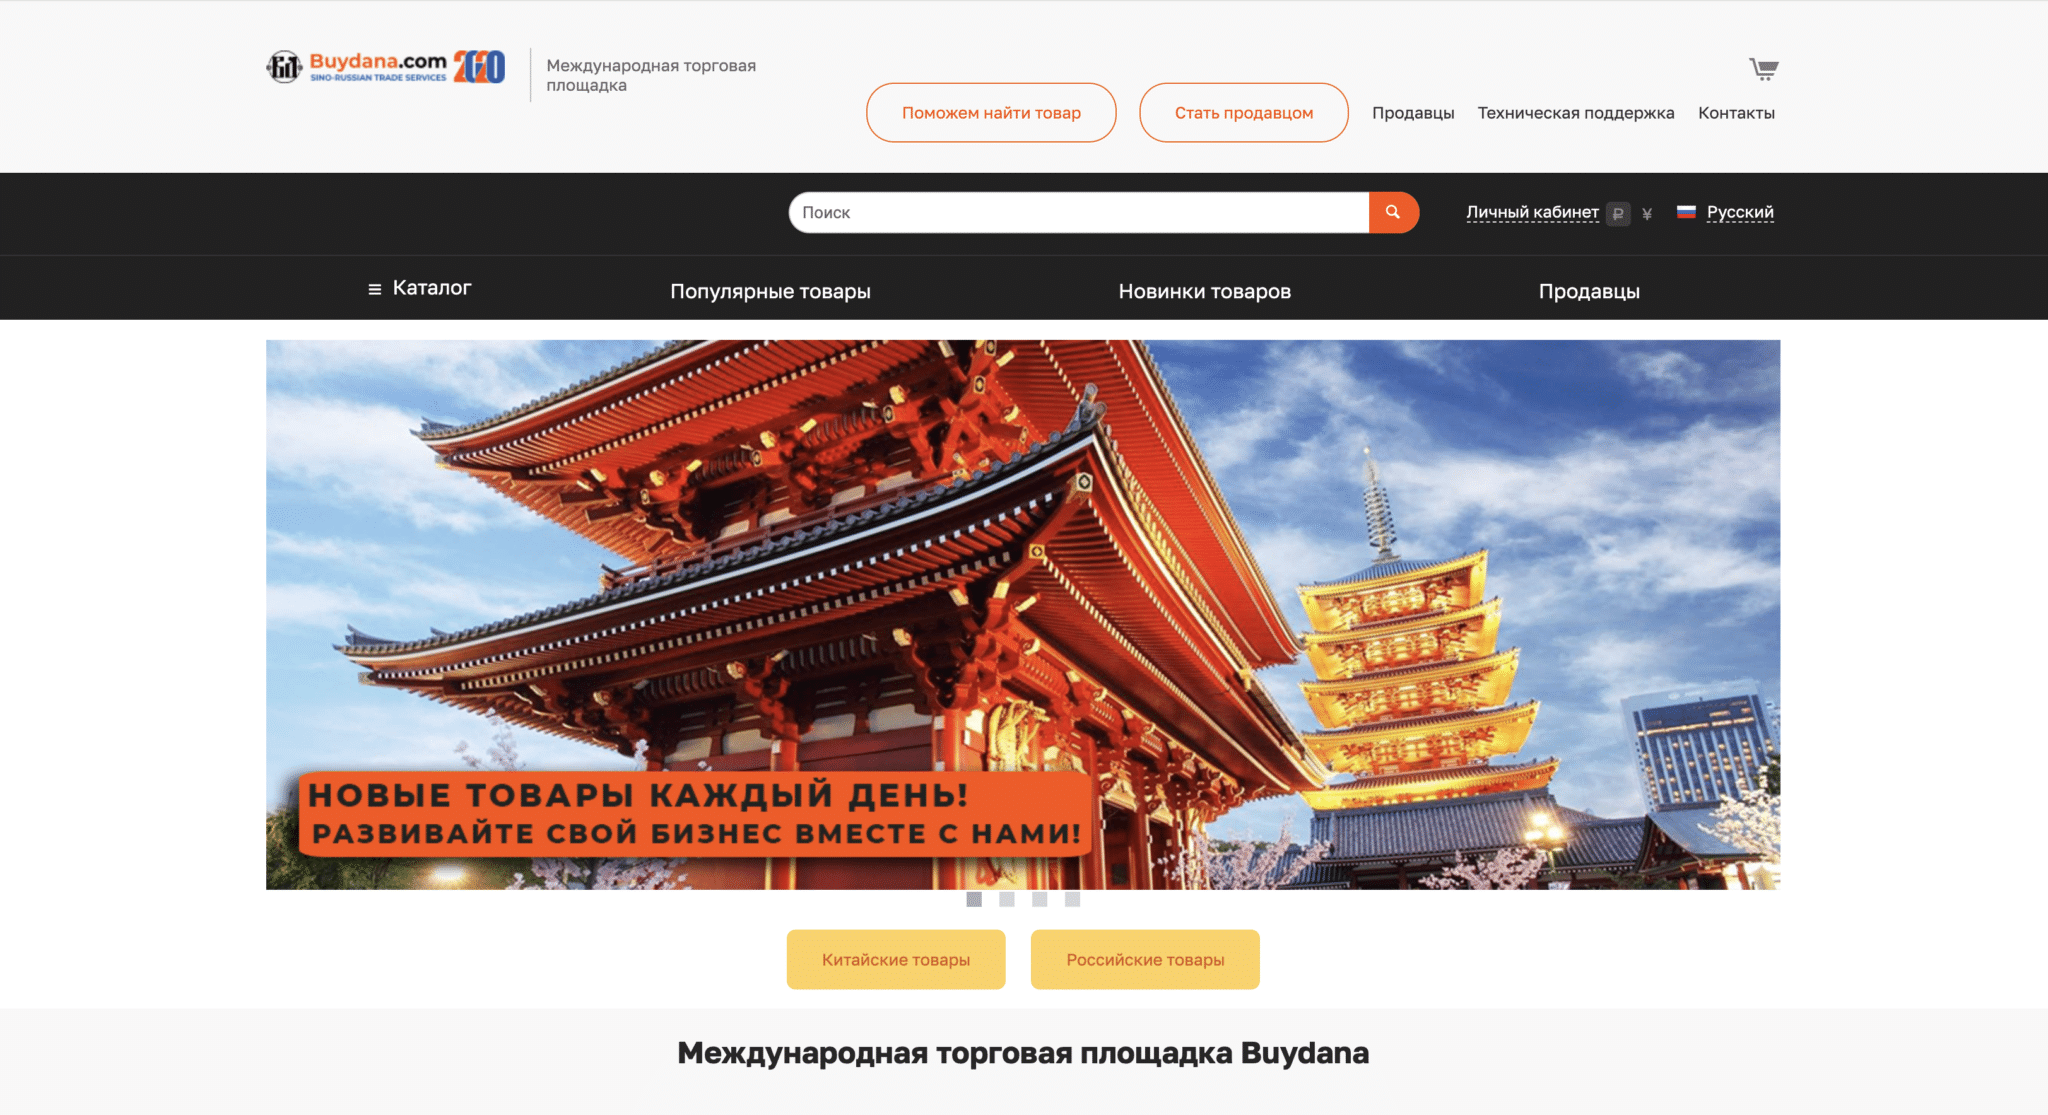 сайт международной торговой площадки Buydana.com